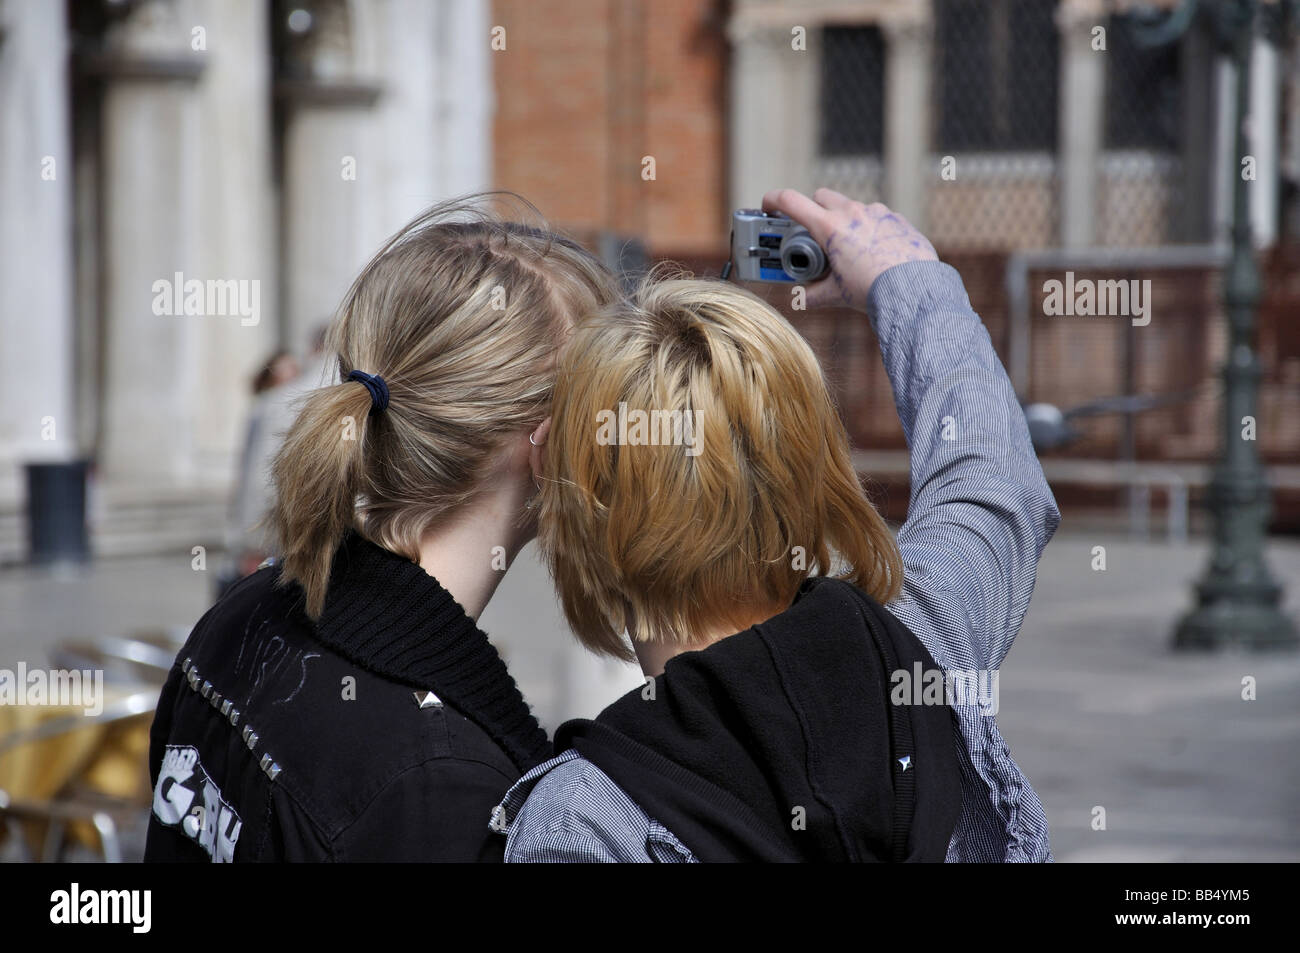 Las niñas tomando fotos de sí mismos, de la plaza de San Marcos, en Venecia, en la provincia de Venecia, Región de Véneto, Italia Foto de stock